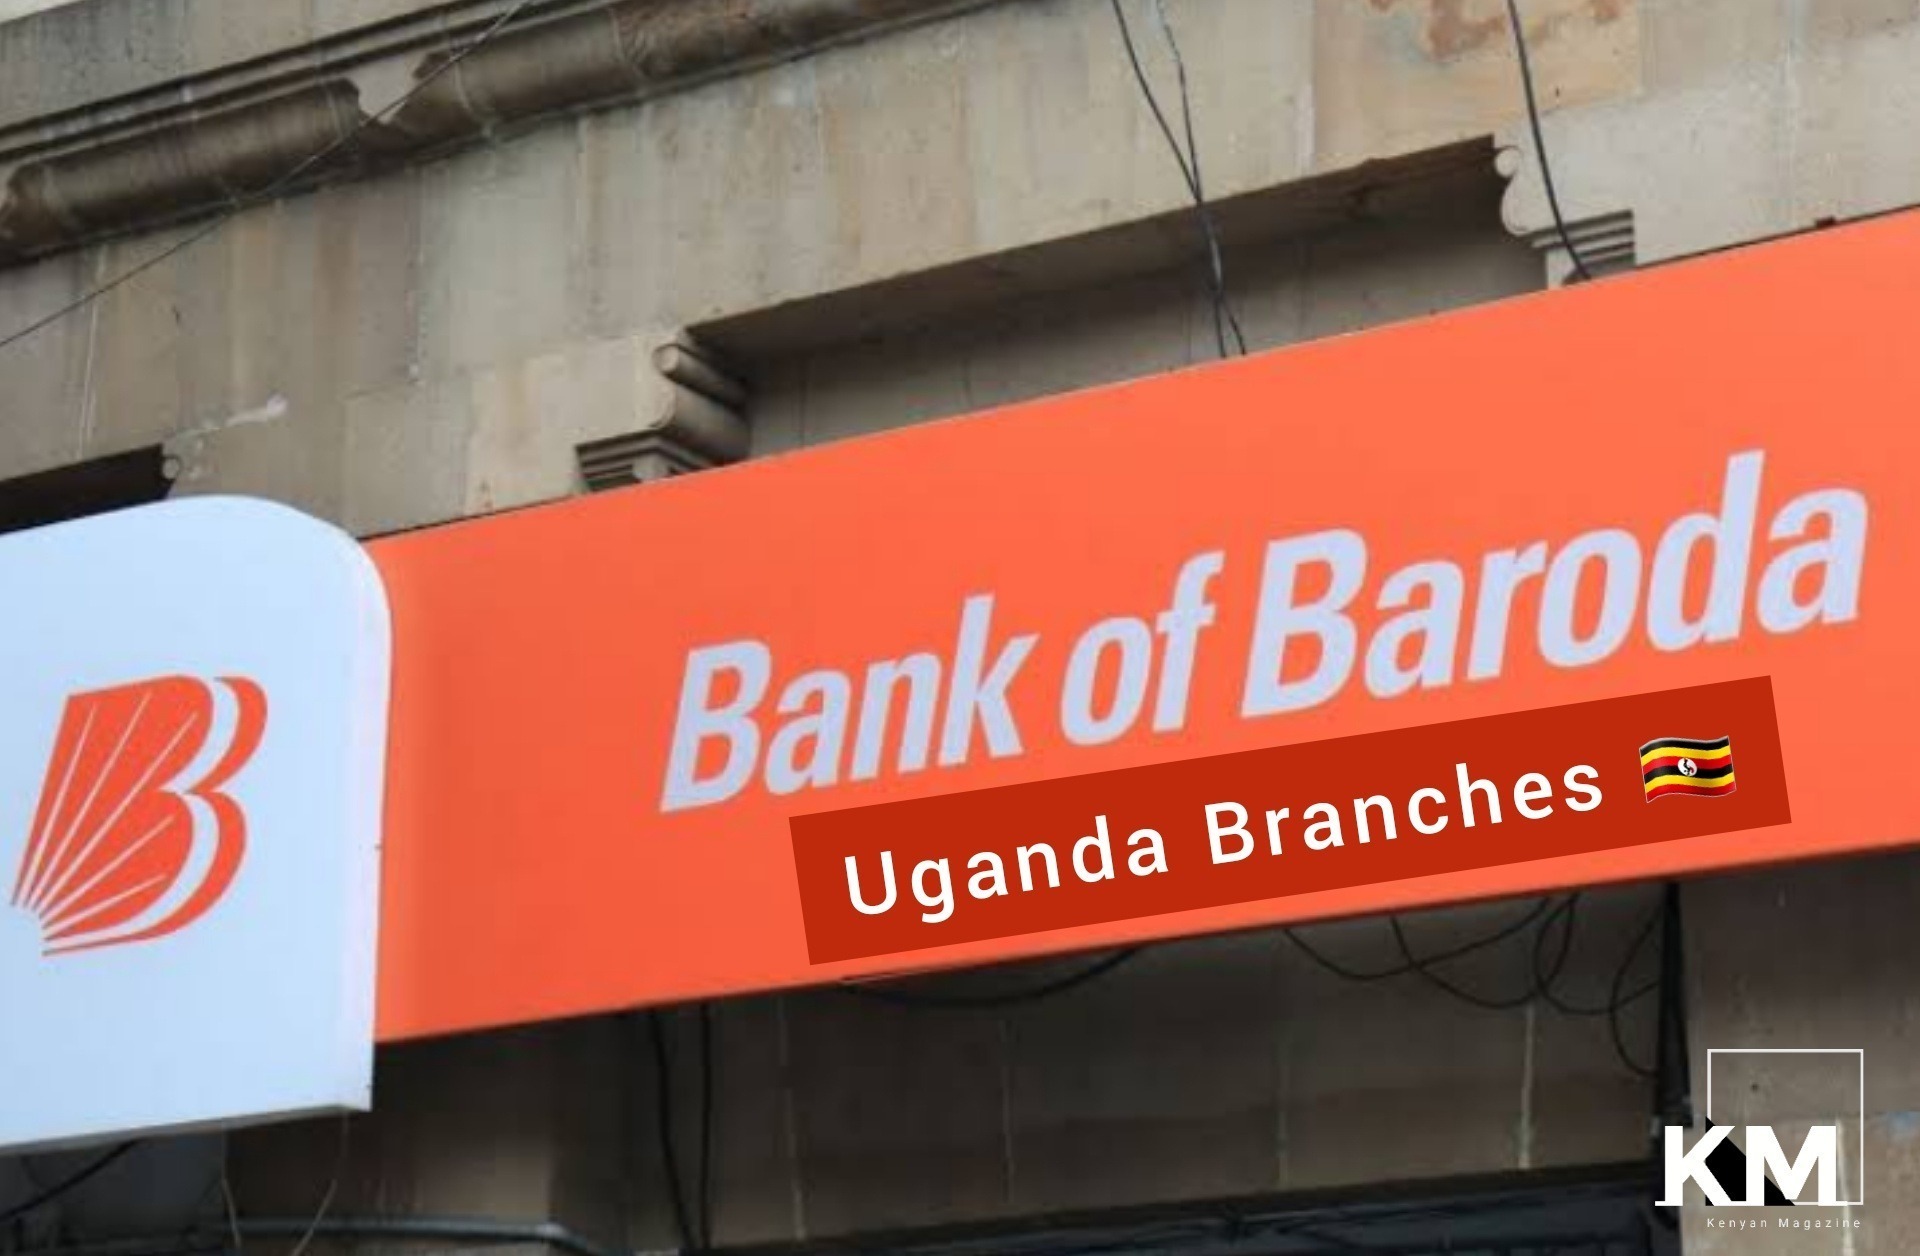 Bank of Baroda branches in Uganda